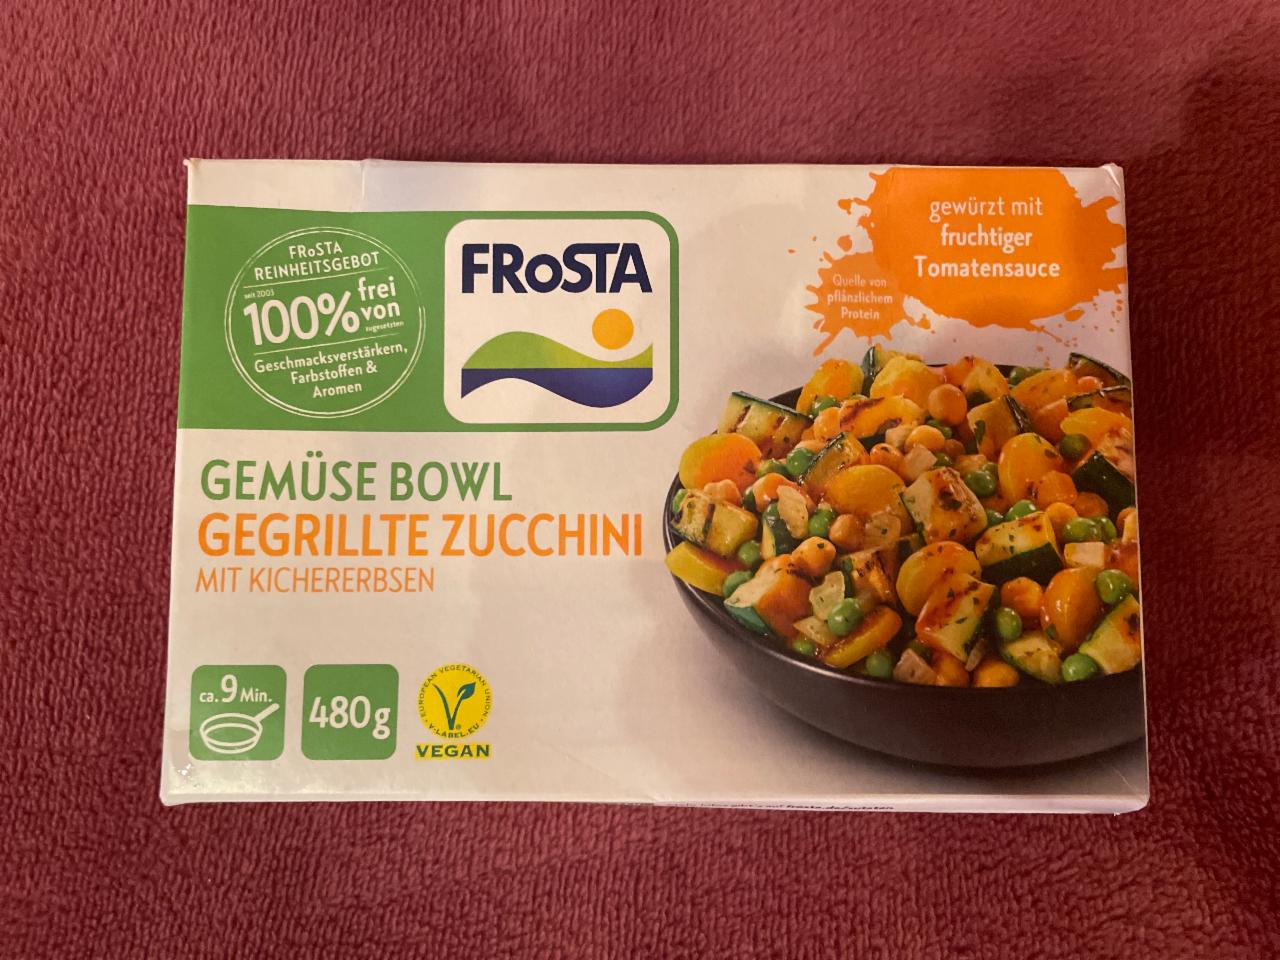 Fotografie - Gemüse Bowl gegrillte Zucchini mit Kichererbsen FRoSTA